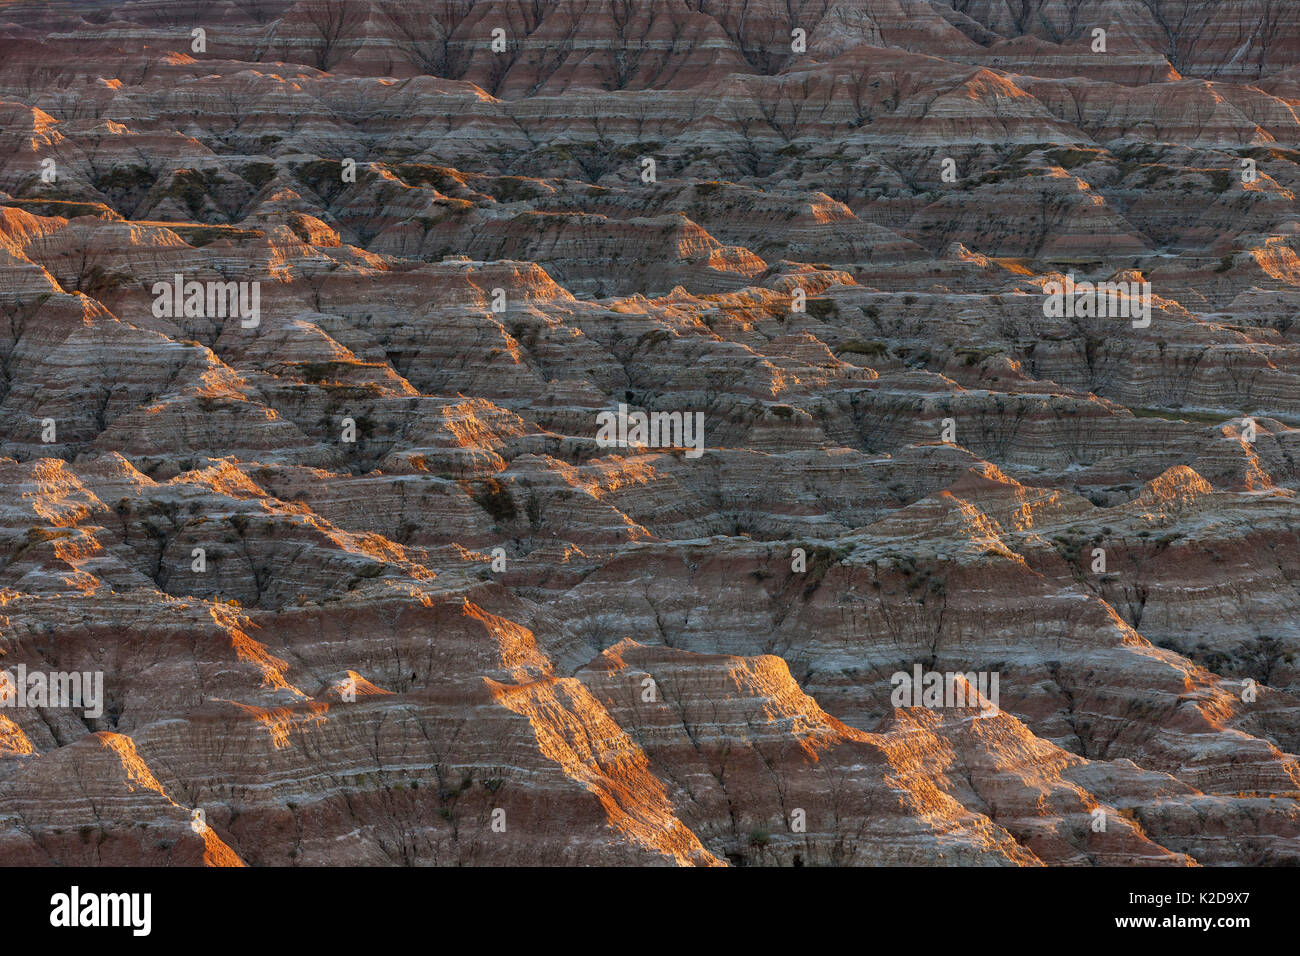 Paesaggio eroso, arenaria striature e le caratteristiche di erosione, Parco nazionale Badlands, Dakota del Sud, Stati Uniti d'America Settembre 2014. Foto Stock